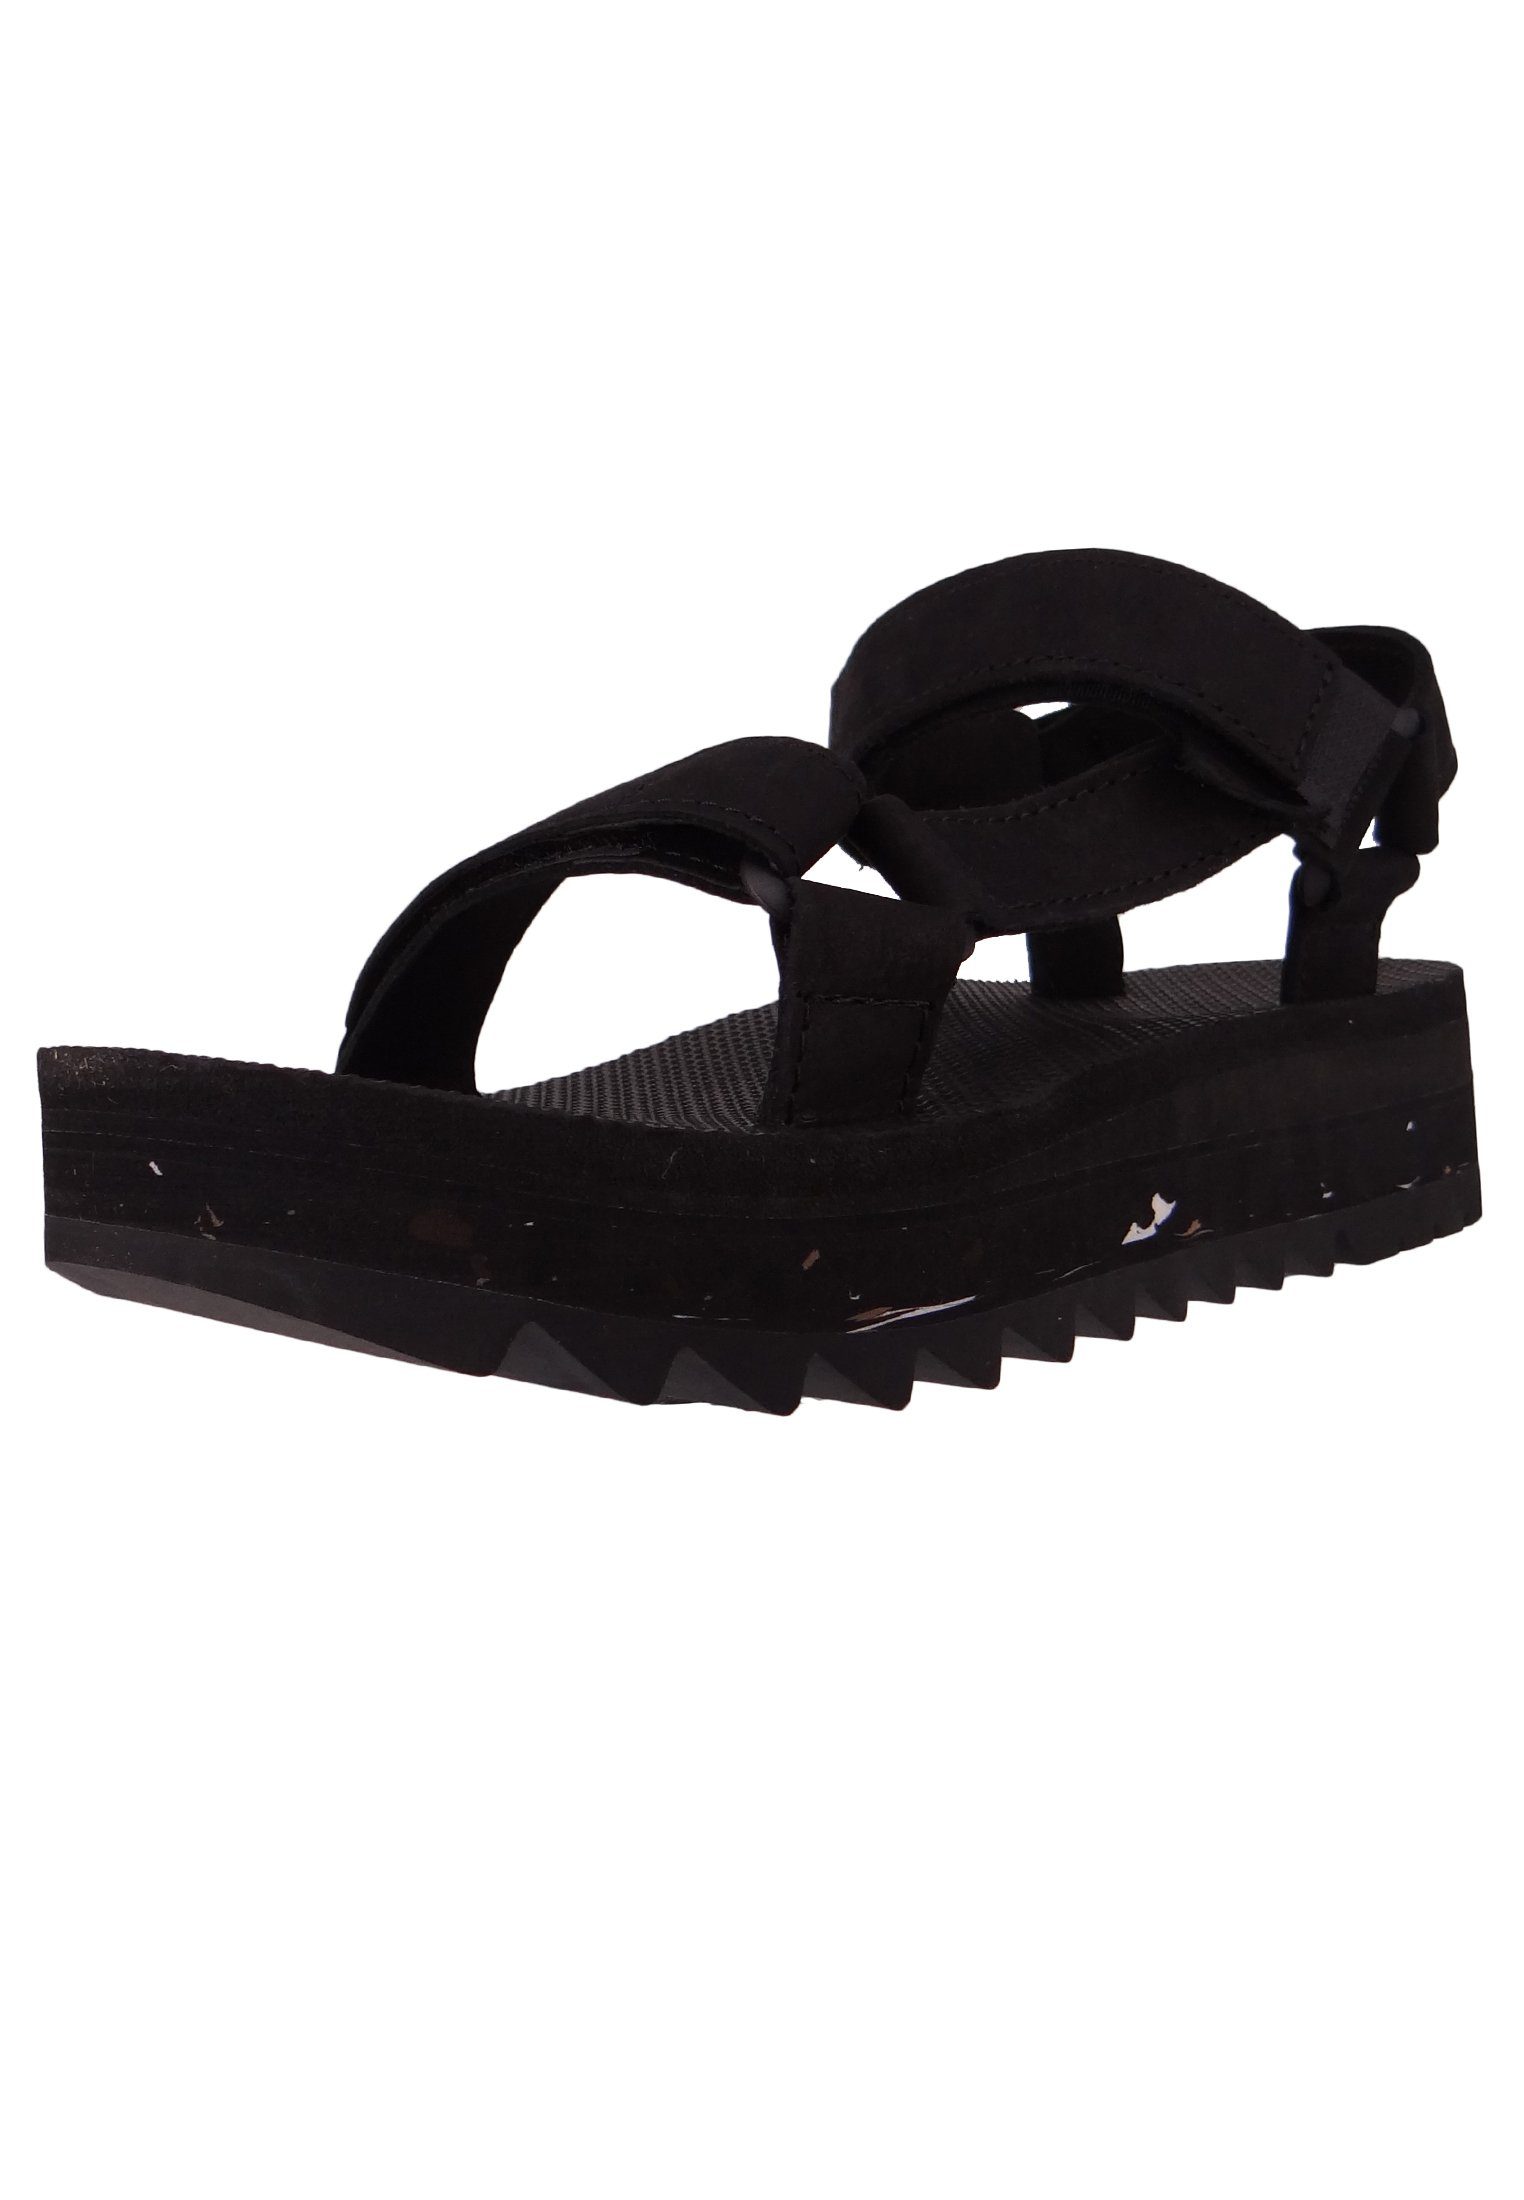 Black Teva Sandale 1139950 schwarz BLK